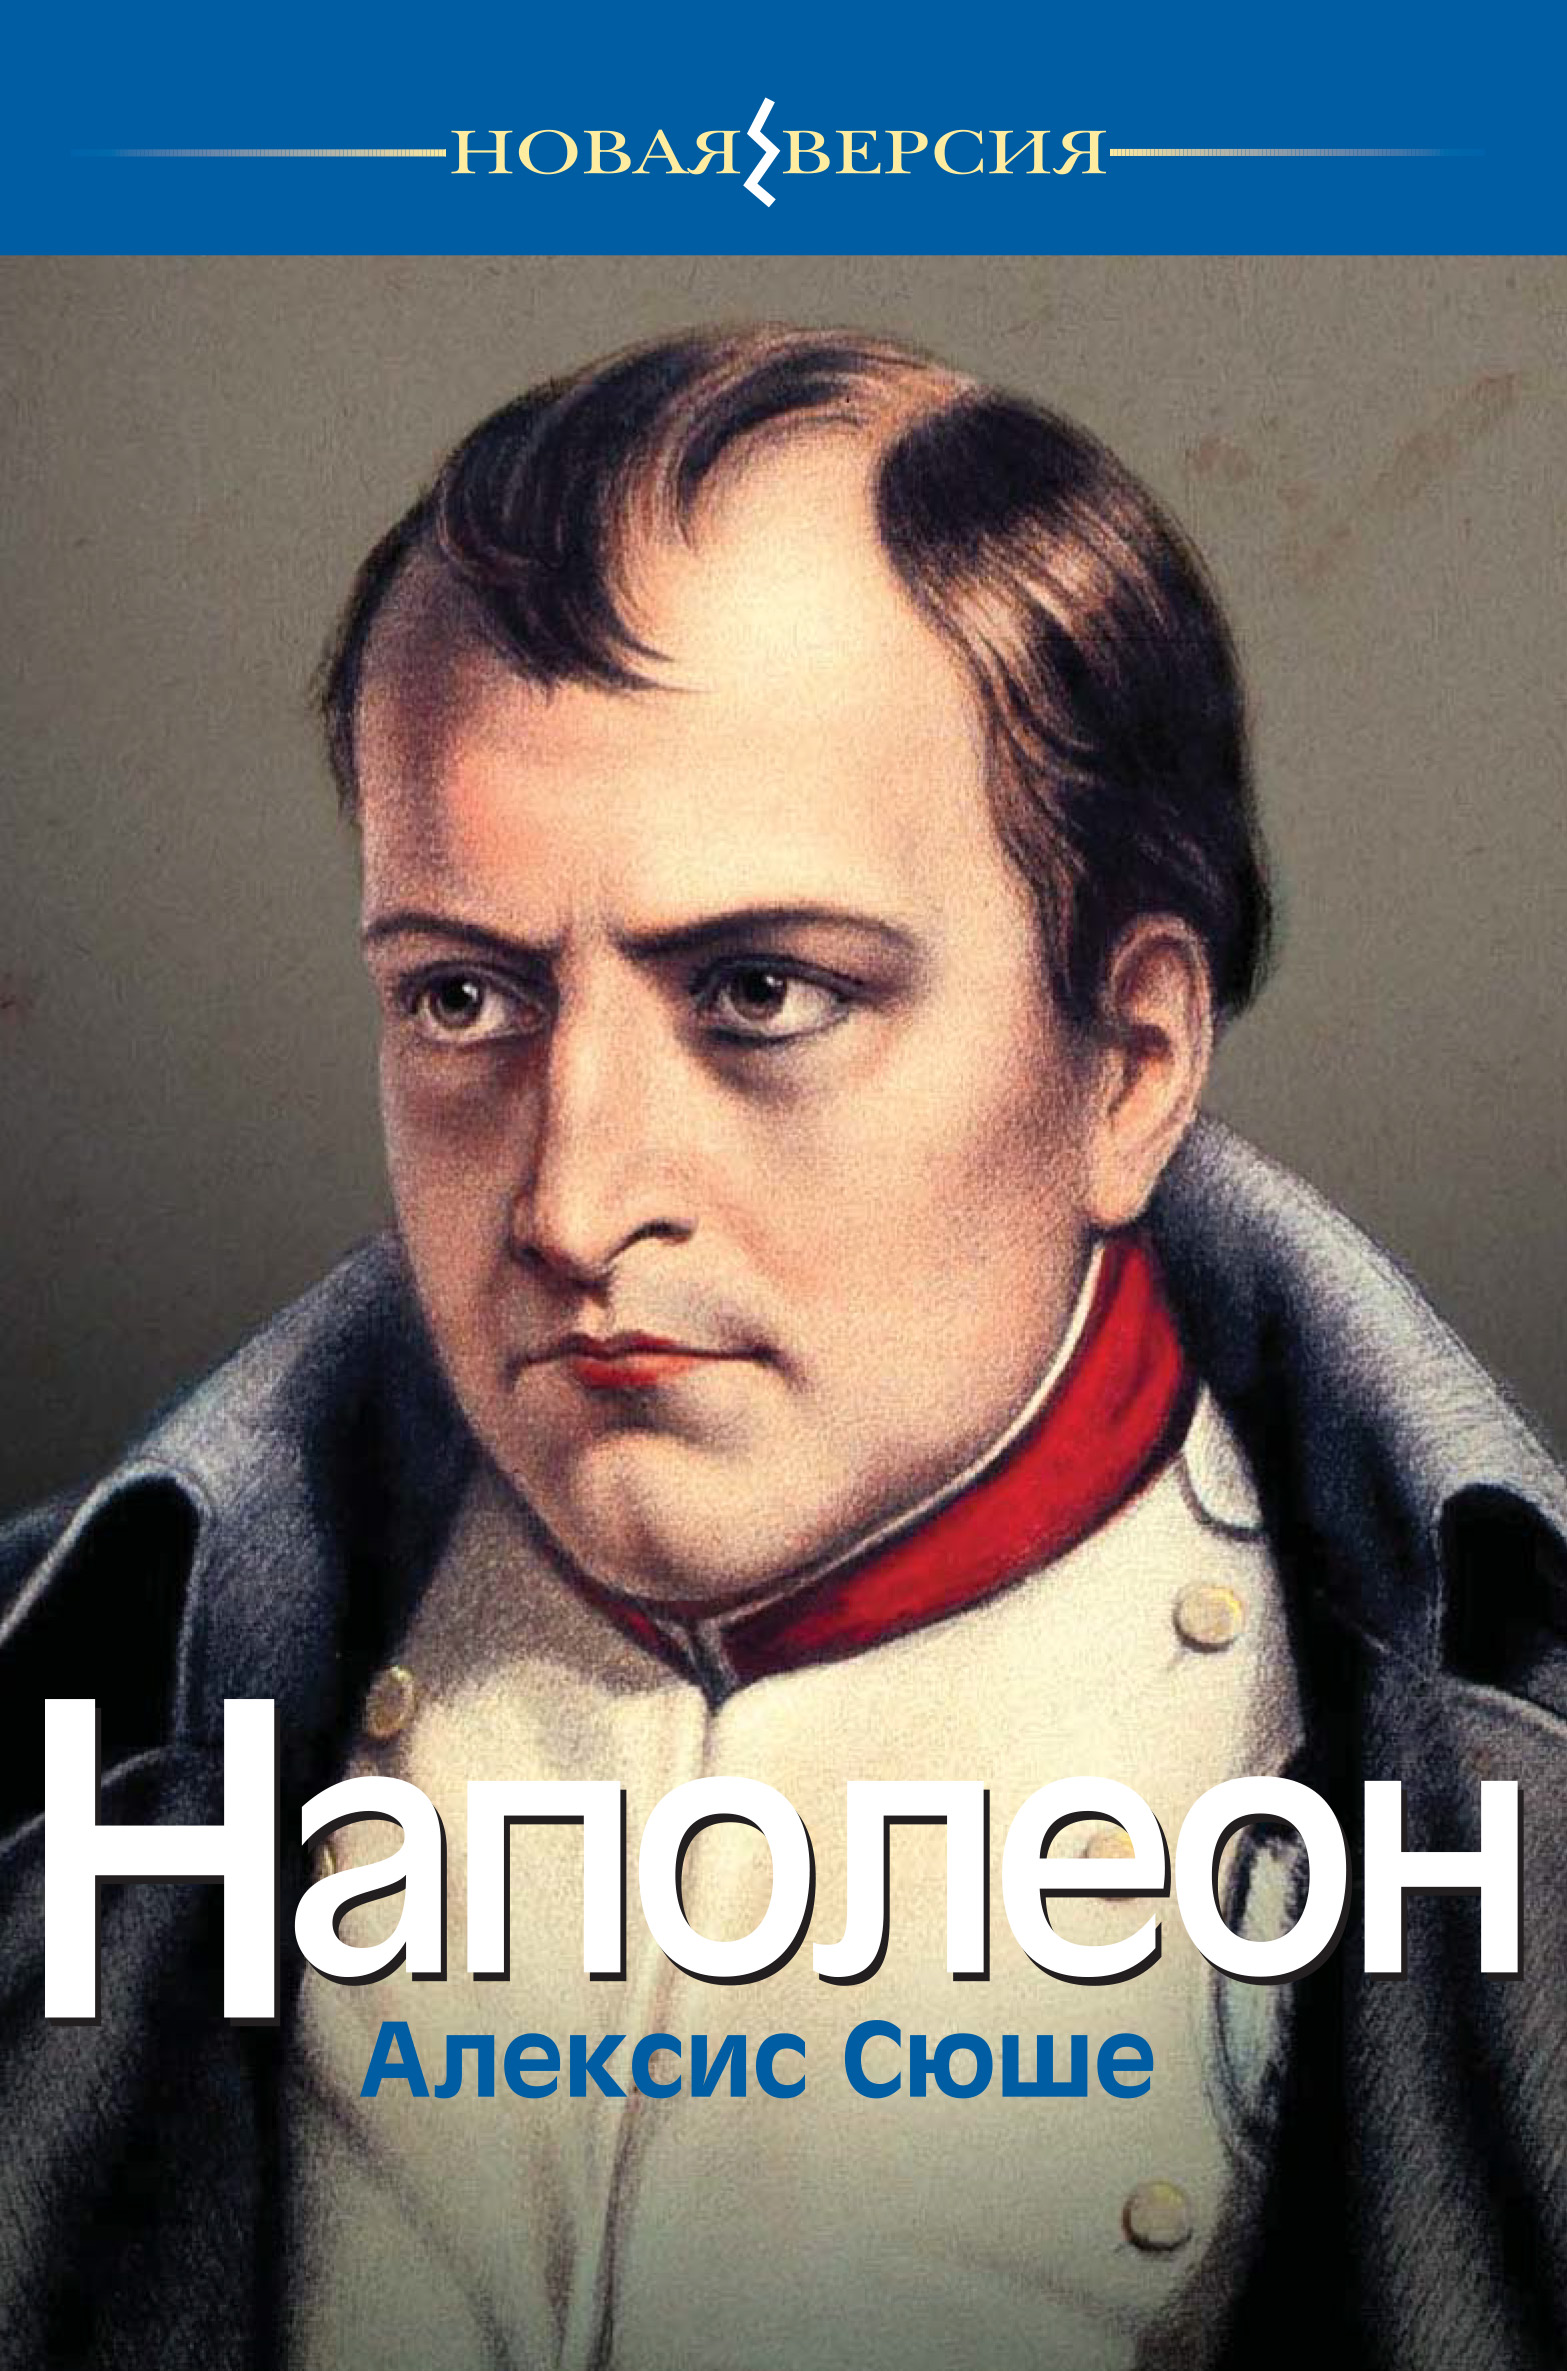 Книга Наполеон из серии , созданная Алексис Сюше, может относится к жанру Биографии и Мемуары, Зарубежная публицистика. Стоимость электронной книги Наполеон с идентификатором 40477822 составляет 199.00 руб.